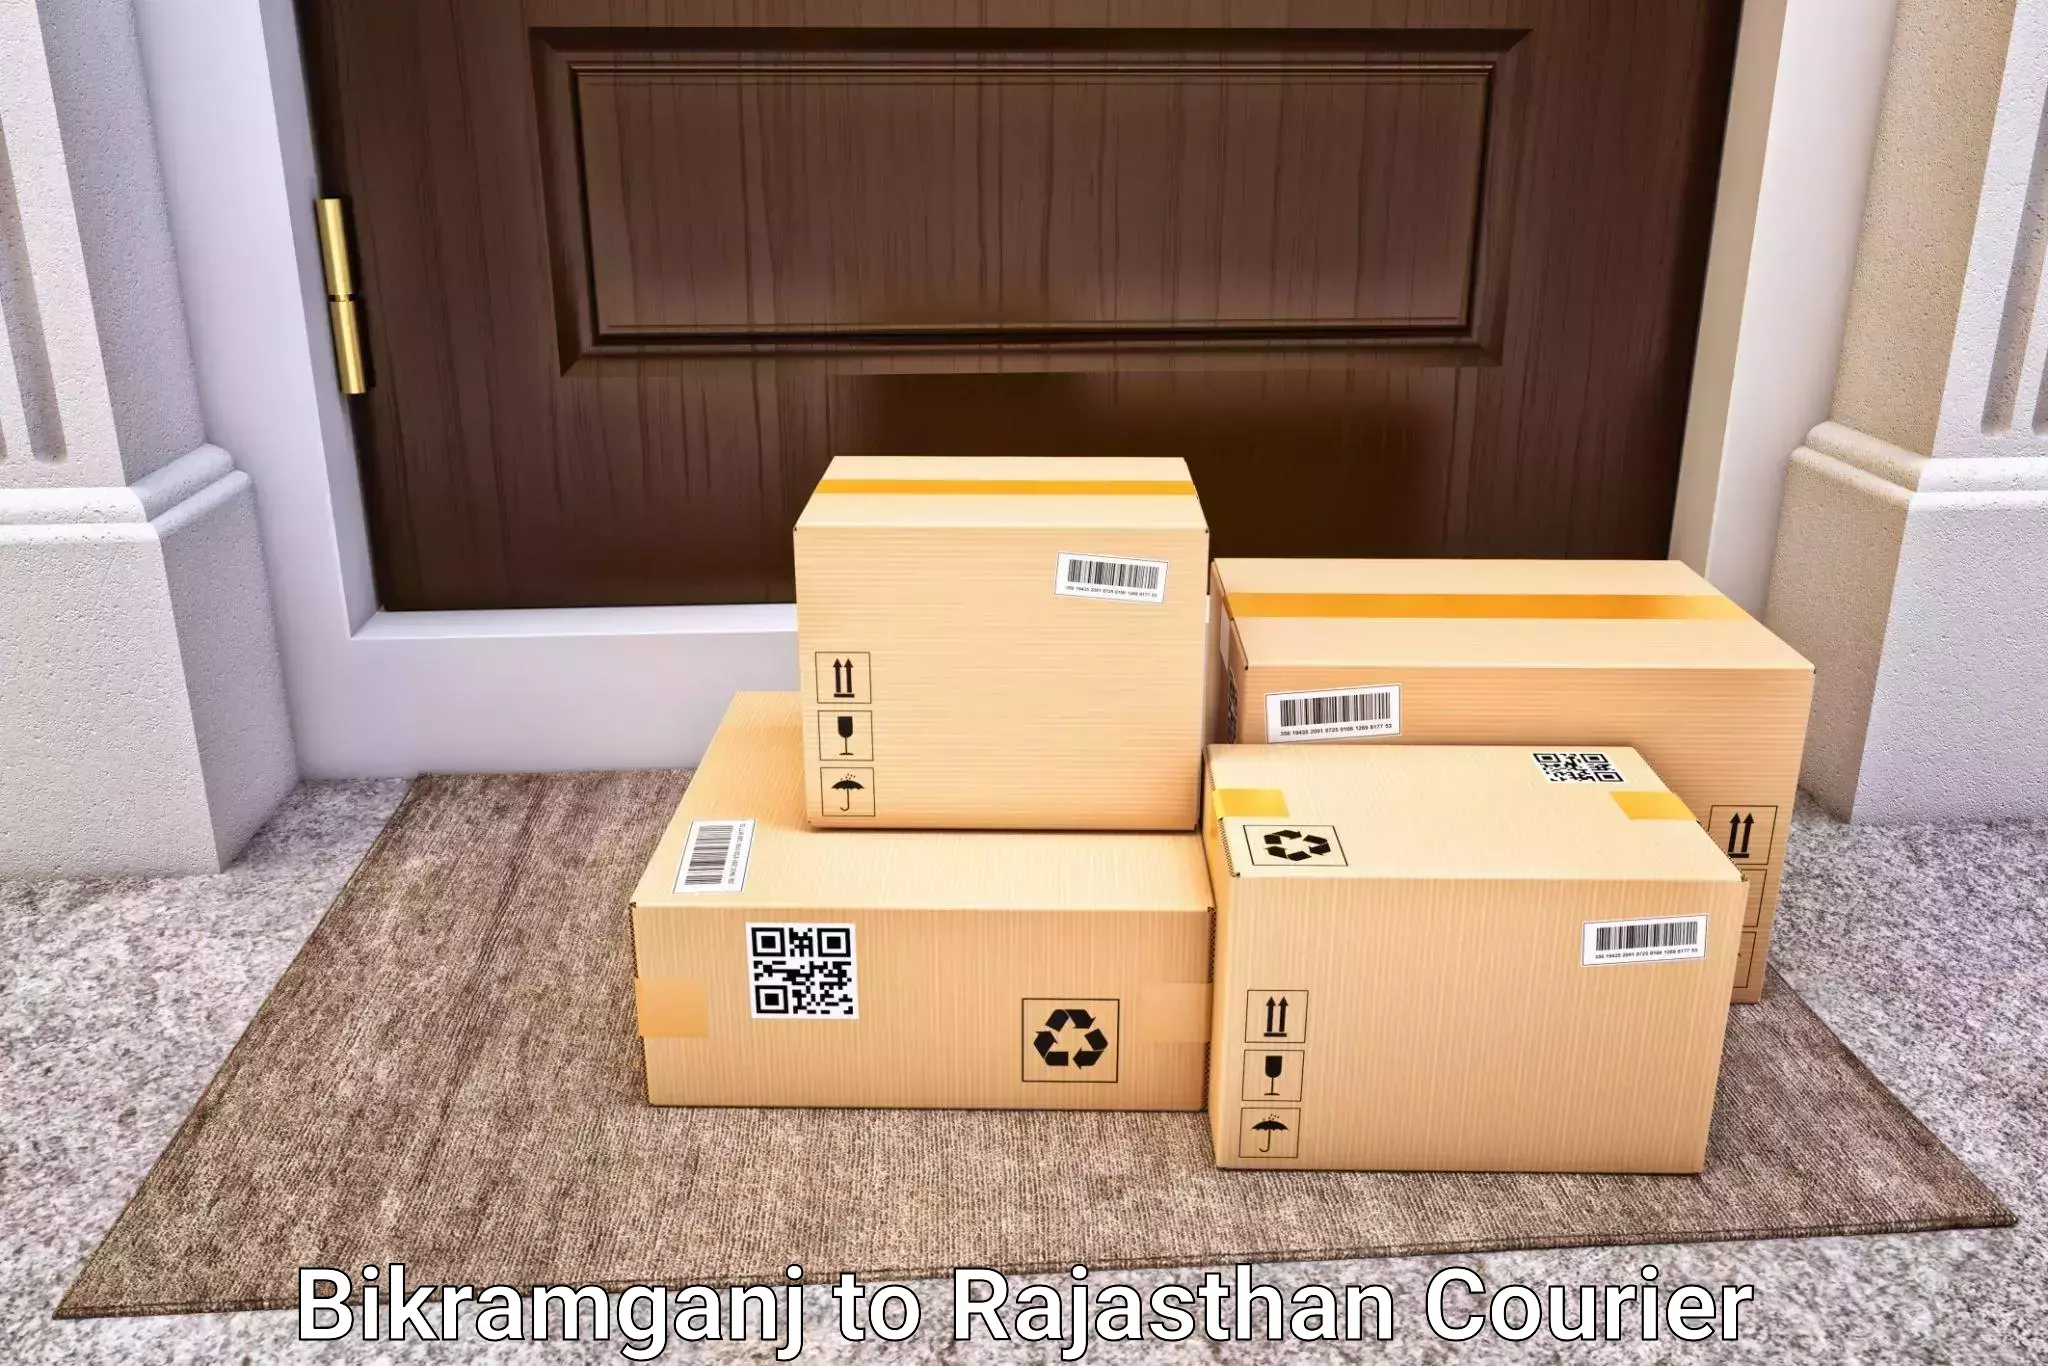 Luggage delivery providers in Bikramganj to Jodhpur